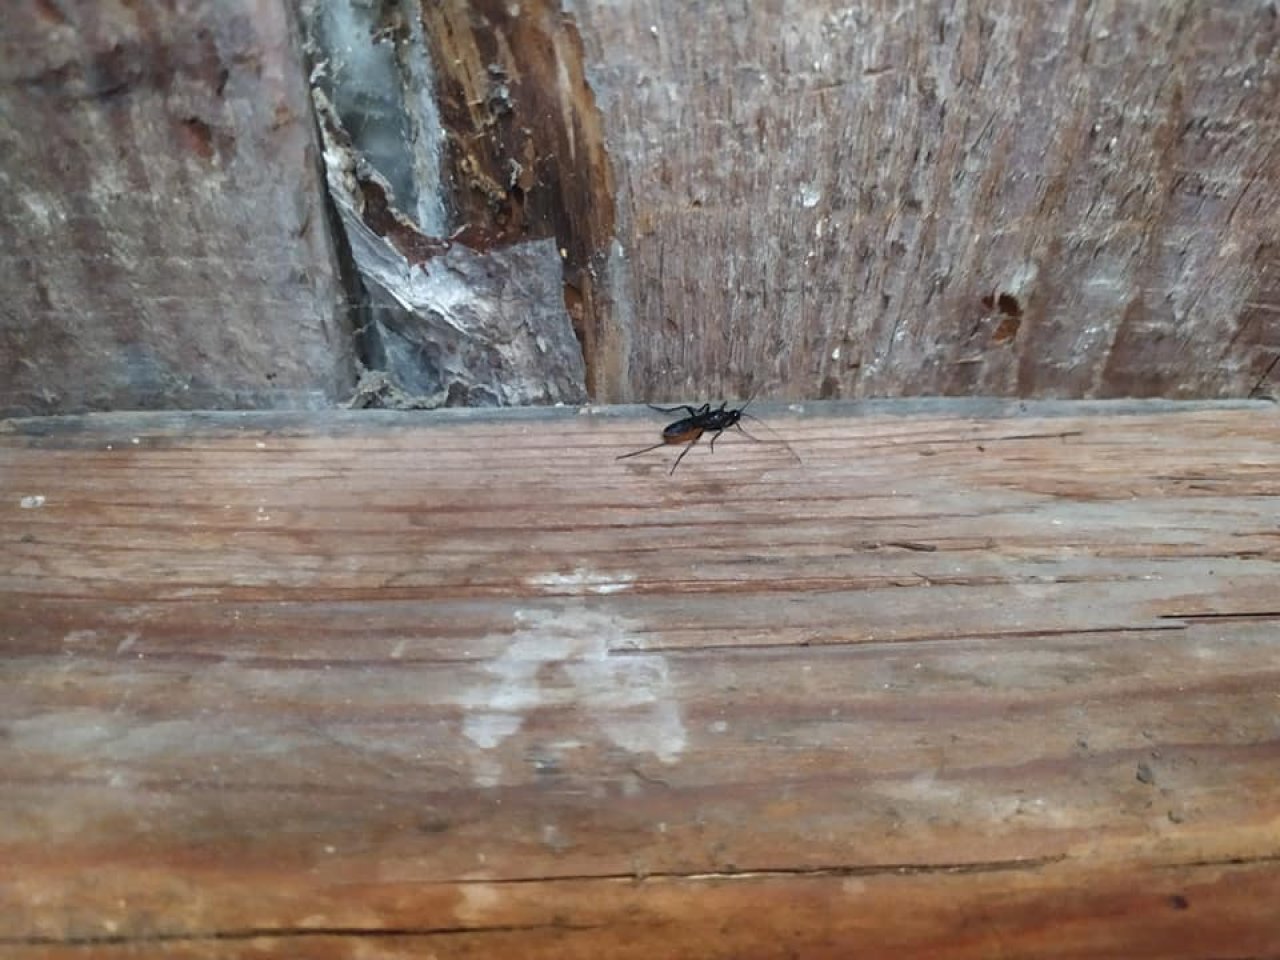 Hmyz procházející po dřevěném povrchu poblíž viditelně poškozené oblasti krovu.